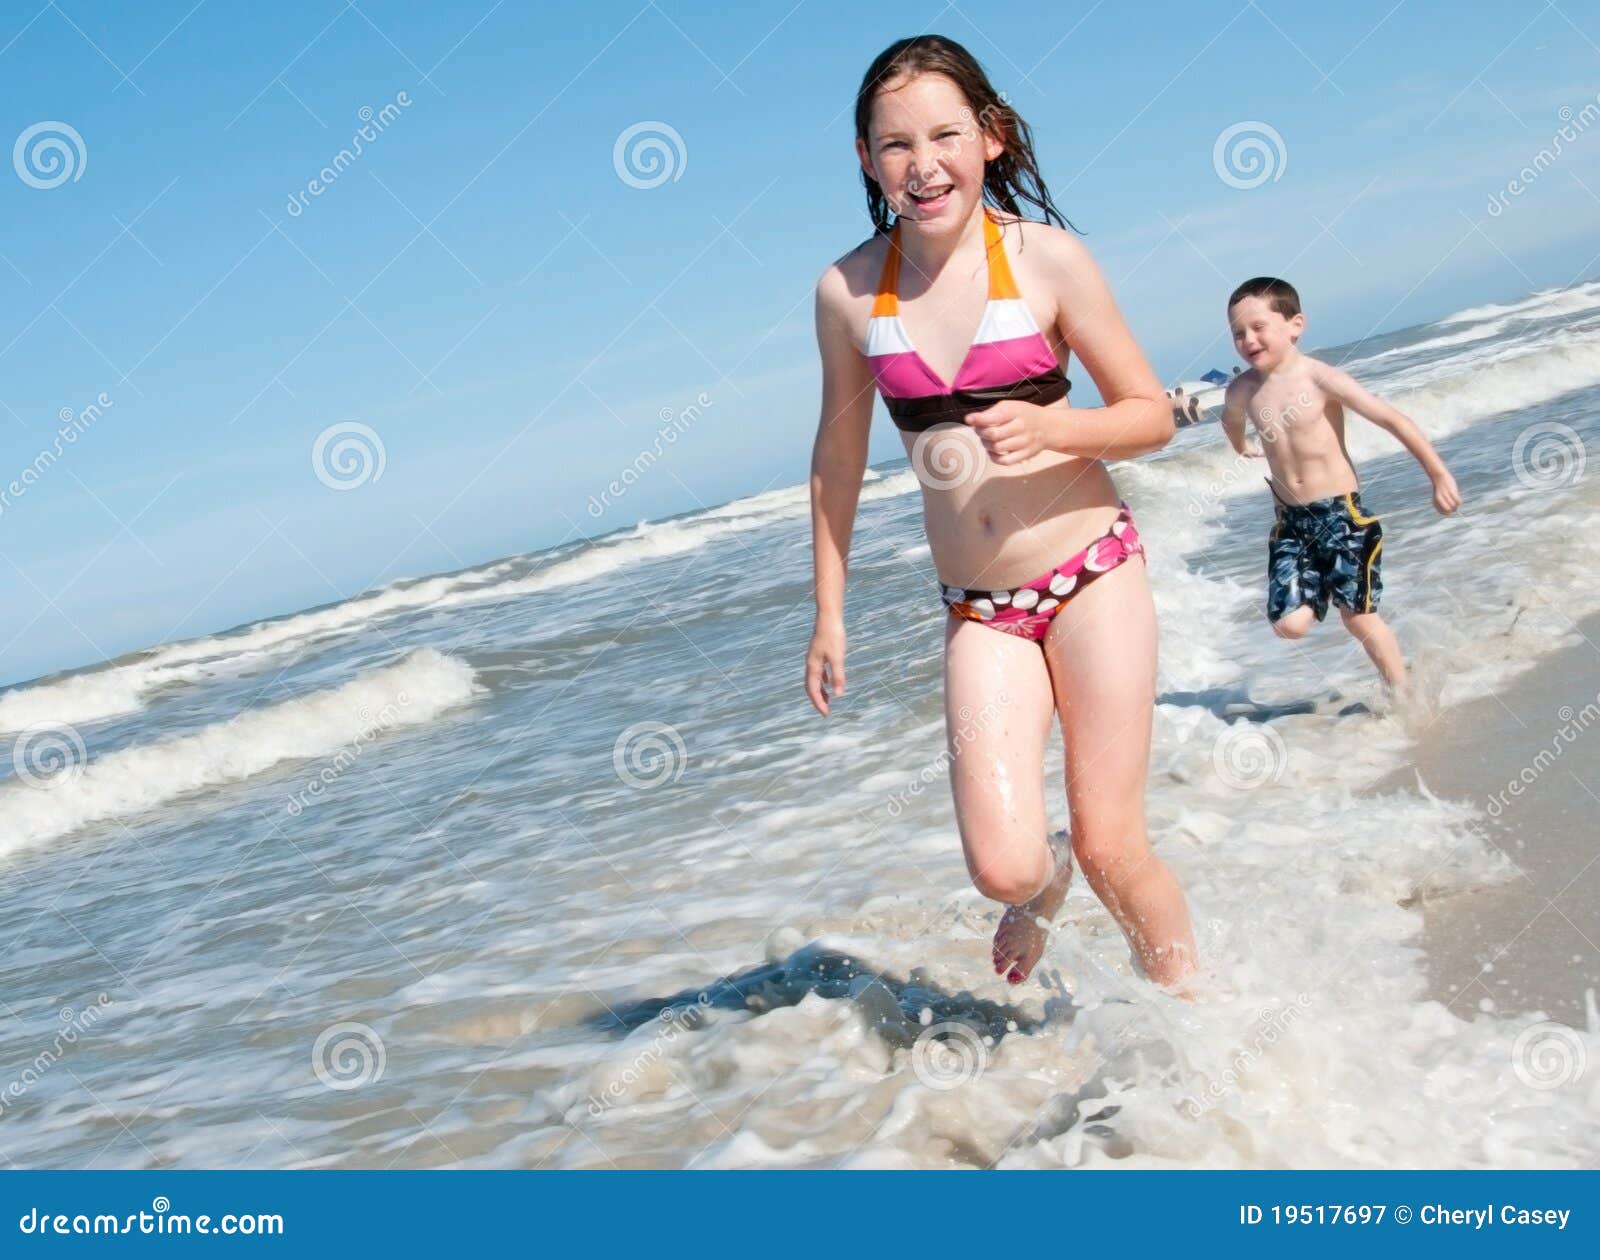 нудиский пляж с голыми детьми фото 98